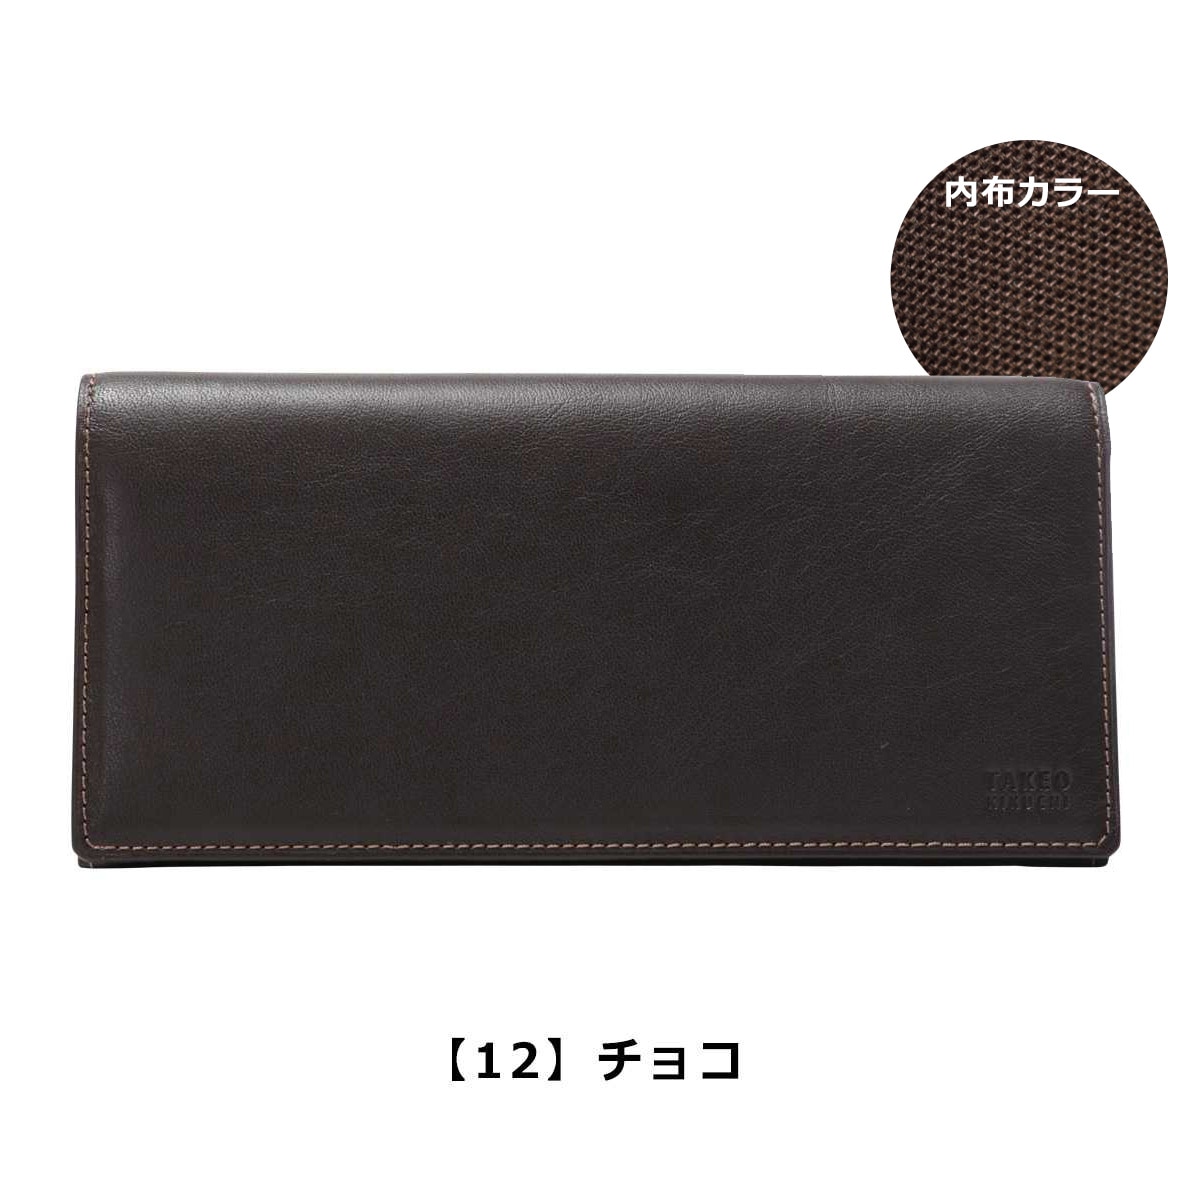 タケオキクチ 長財布 メンズ 日本製 オイルヌメ 6180118 TAKEO KIKUCHI 財布 牛革 本革 レザー